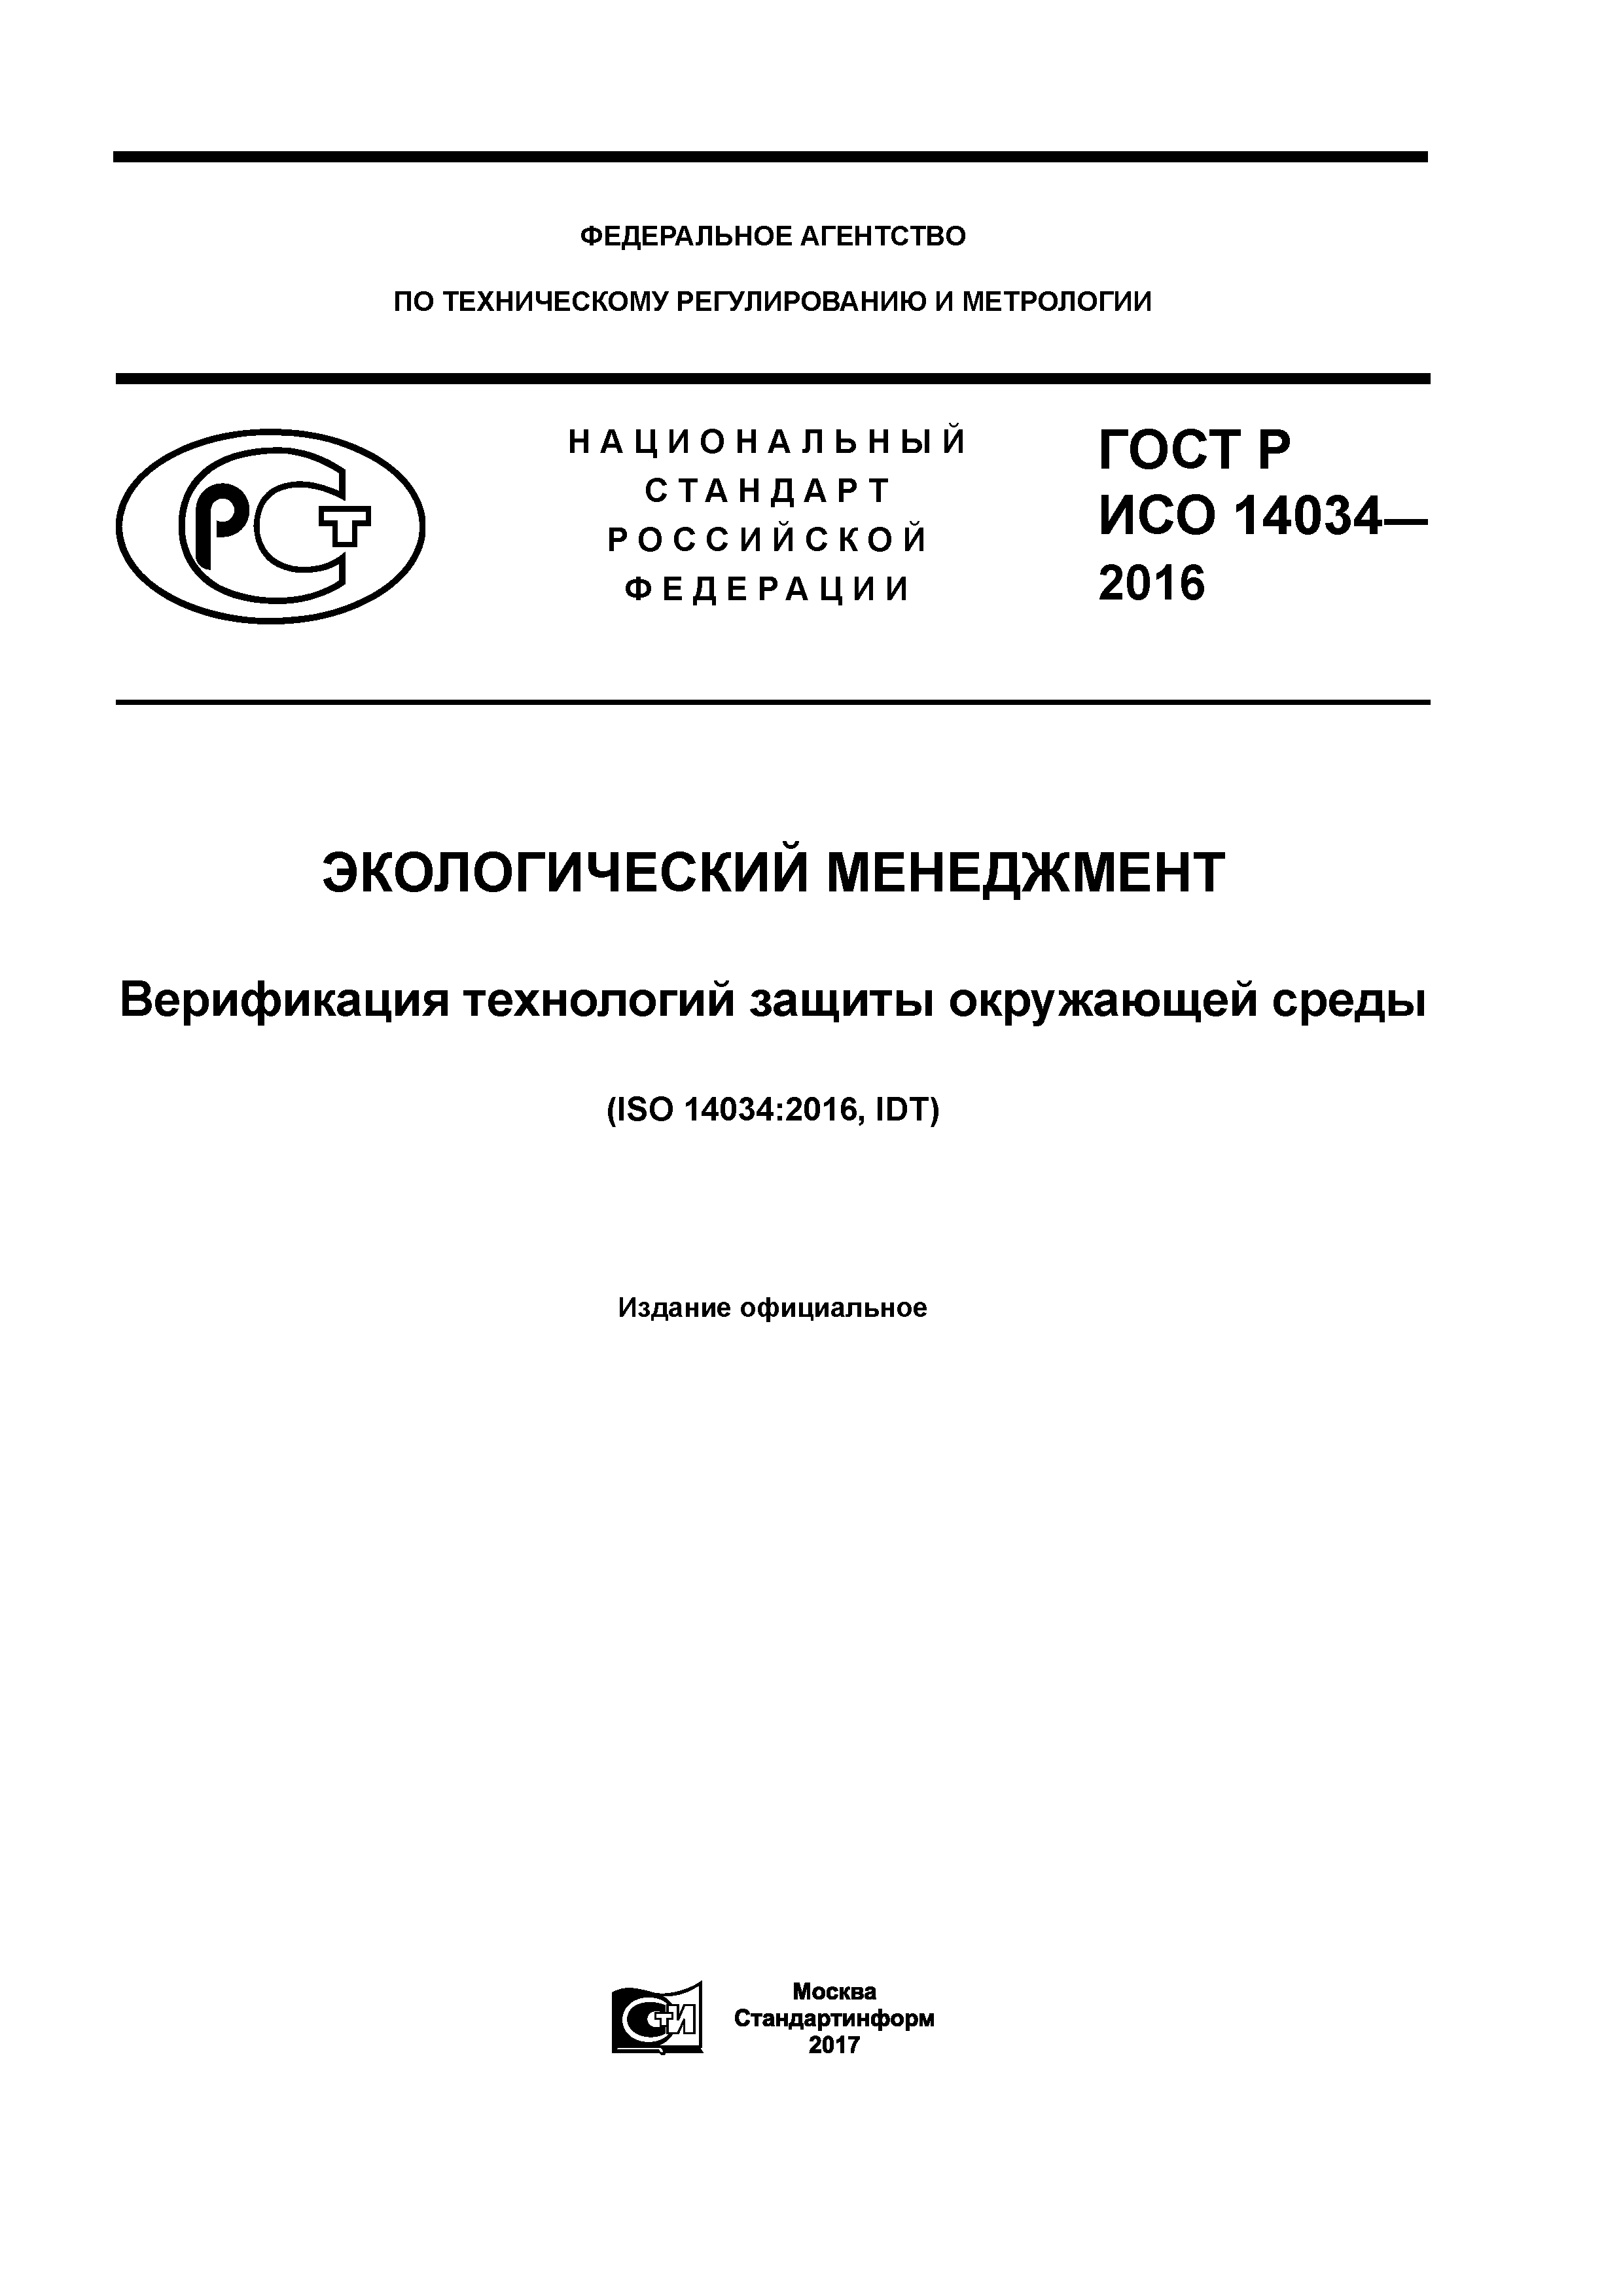 ГОСТ Р ИСО 14034-2016